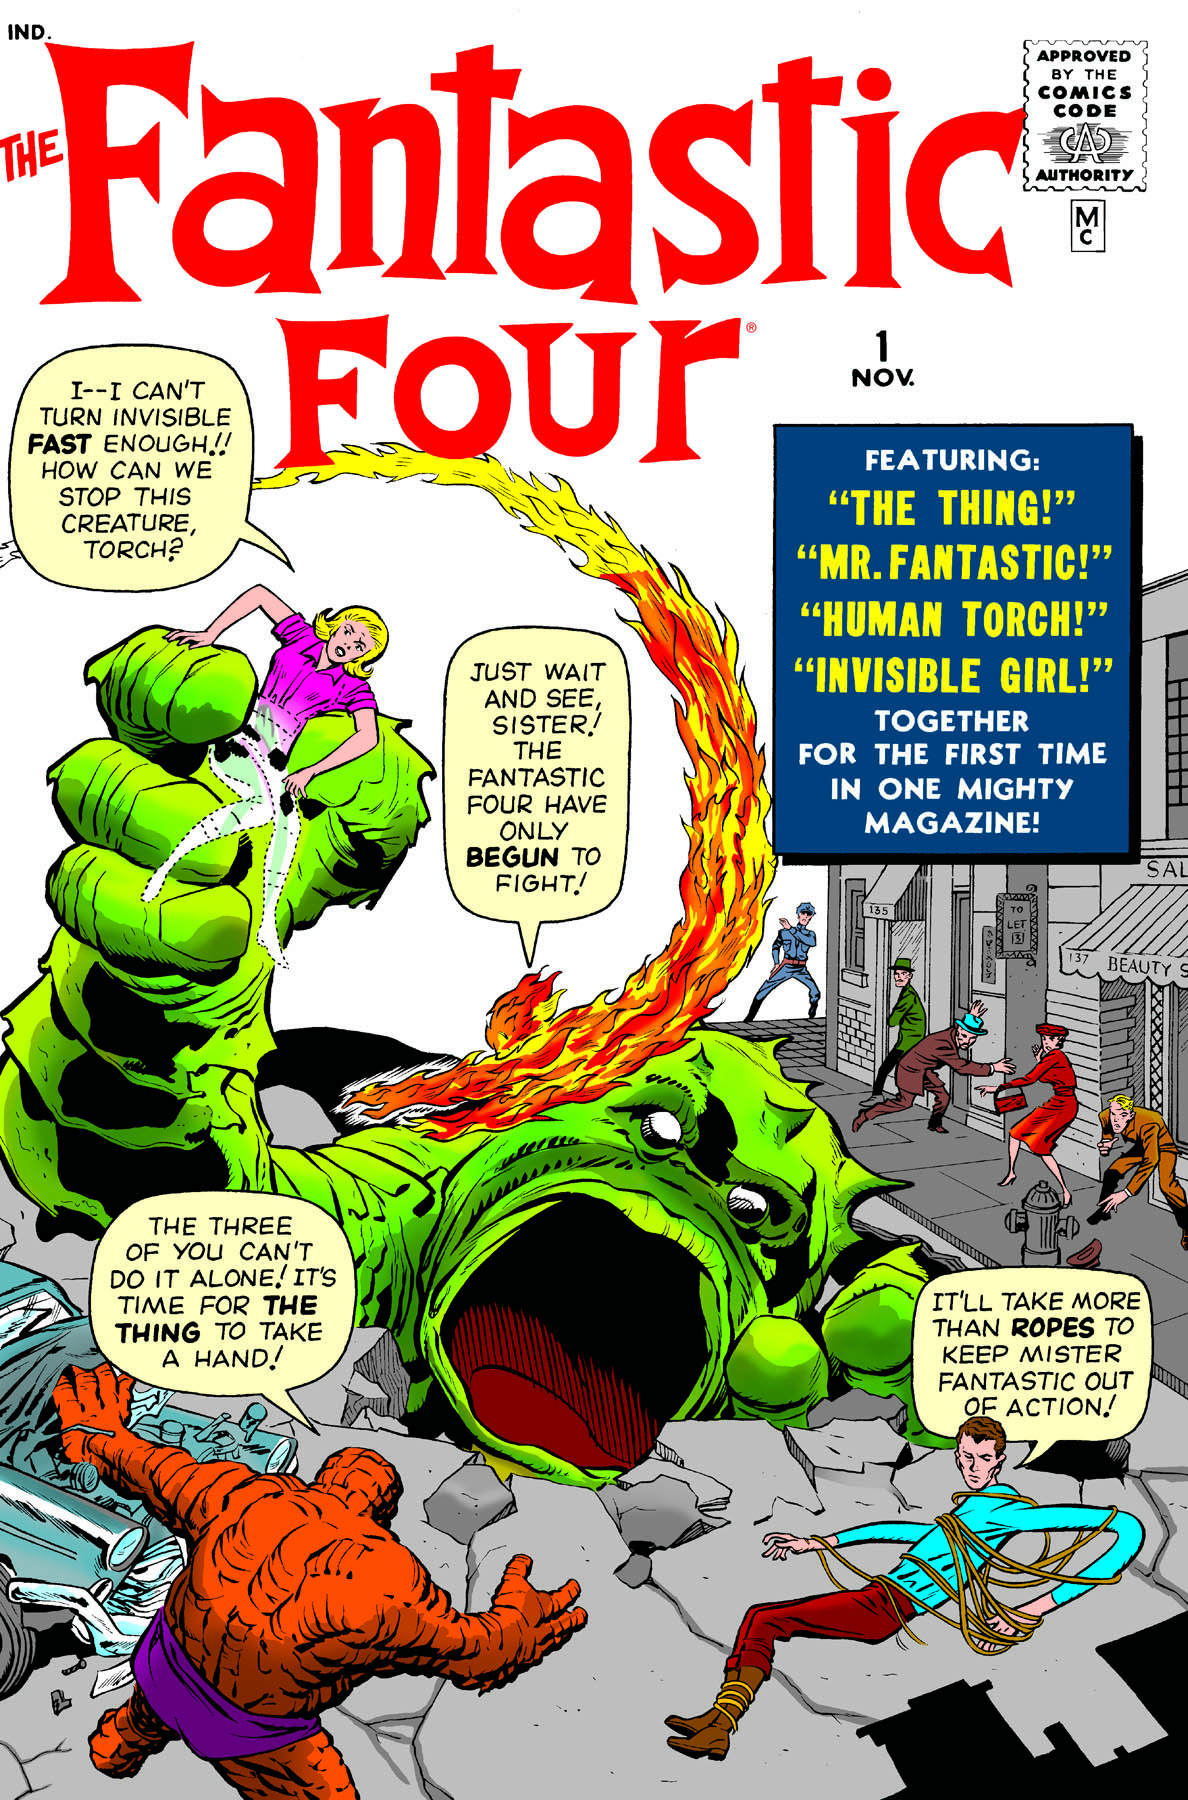 Fantastic Four Omnibus Vol. 1 (Hardcover)